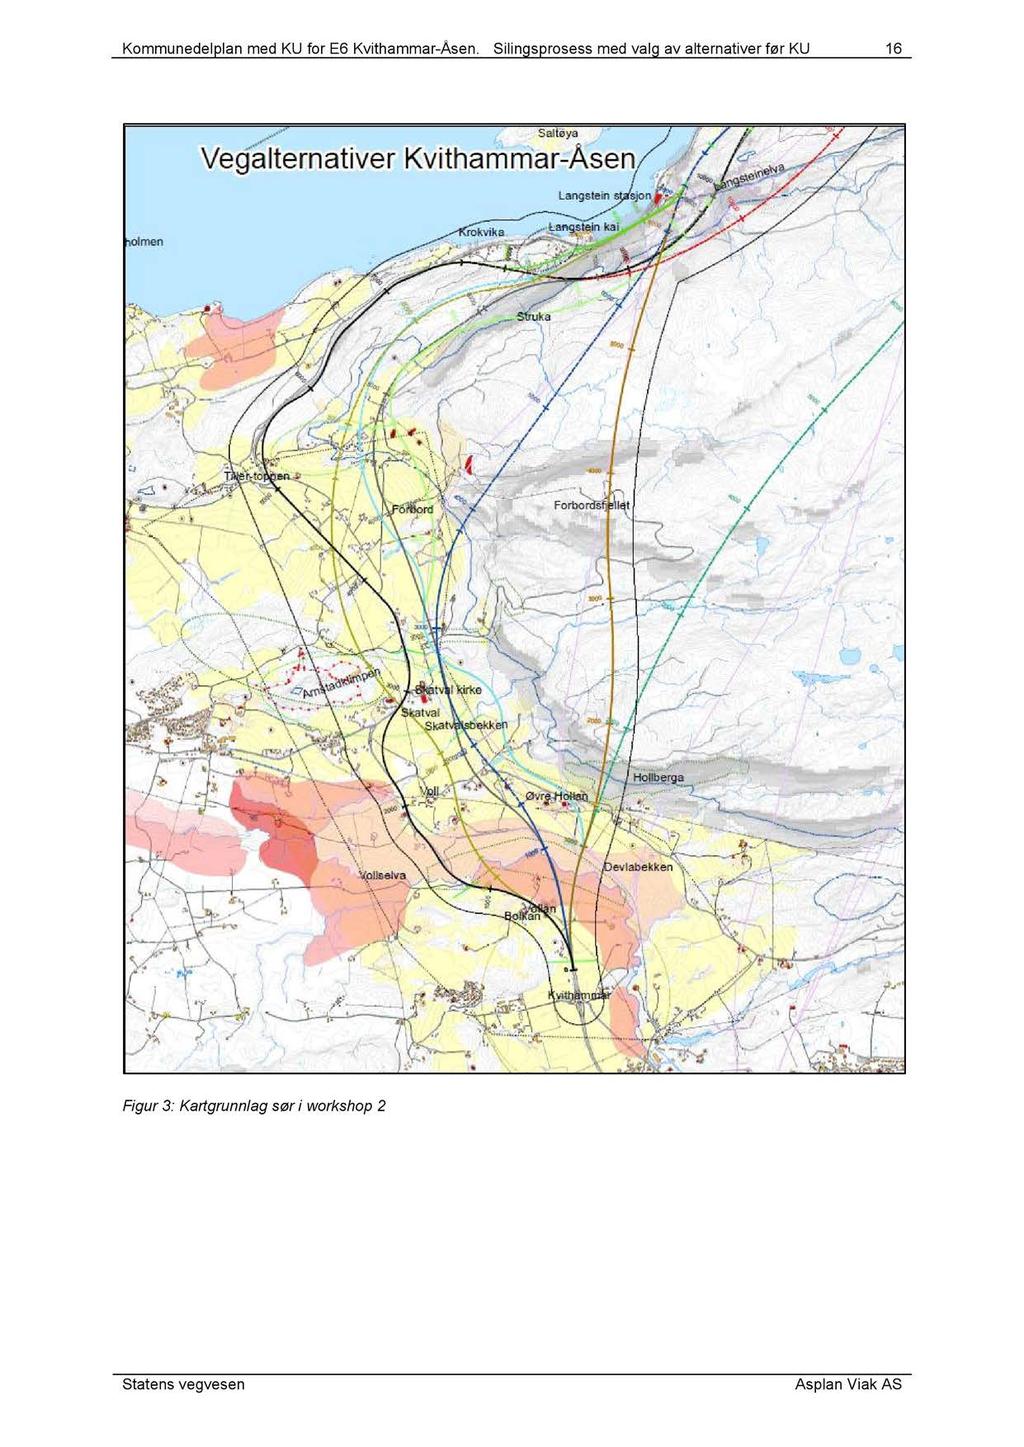 Kommunedelplan med KU for E6 Kvithammar-Åsen.